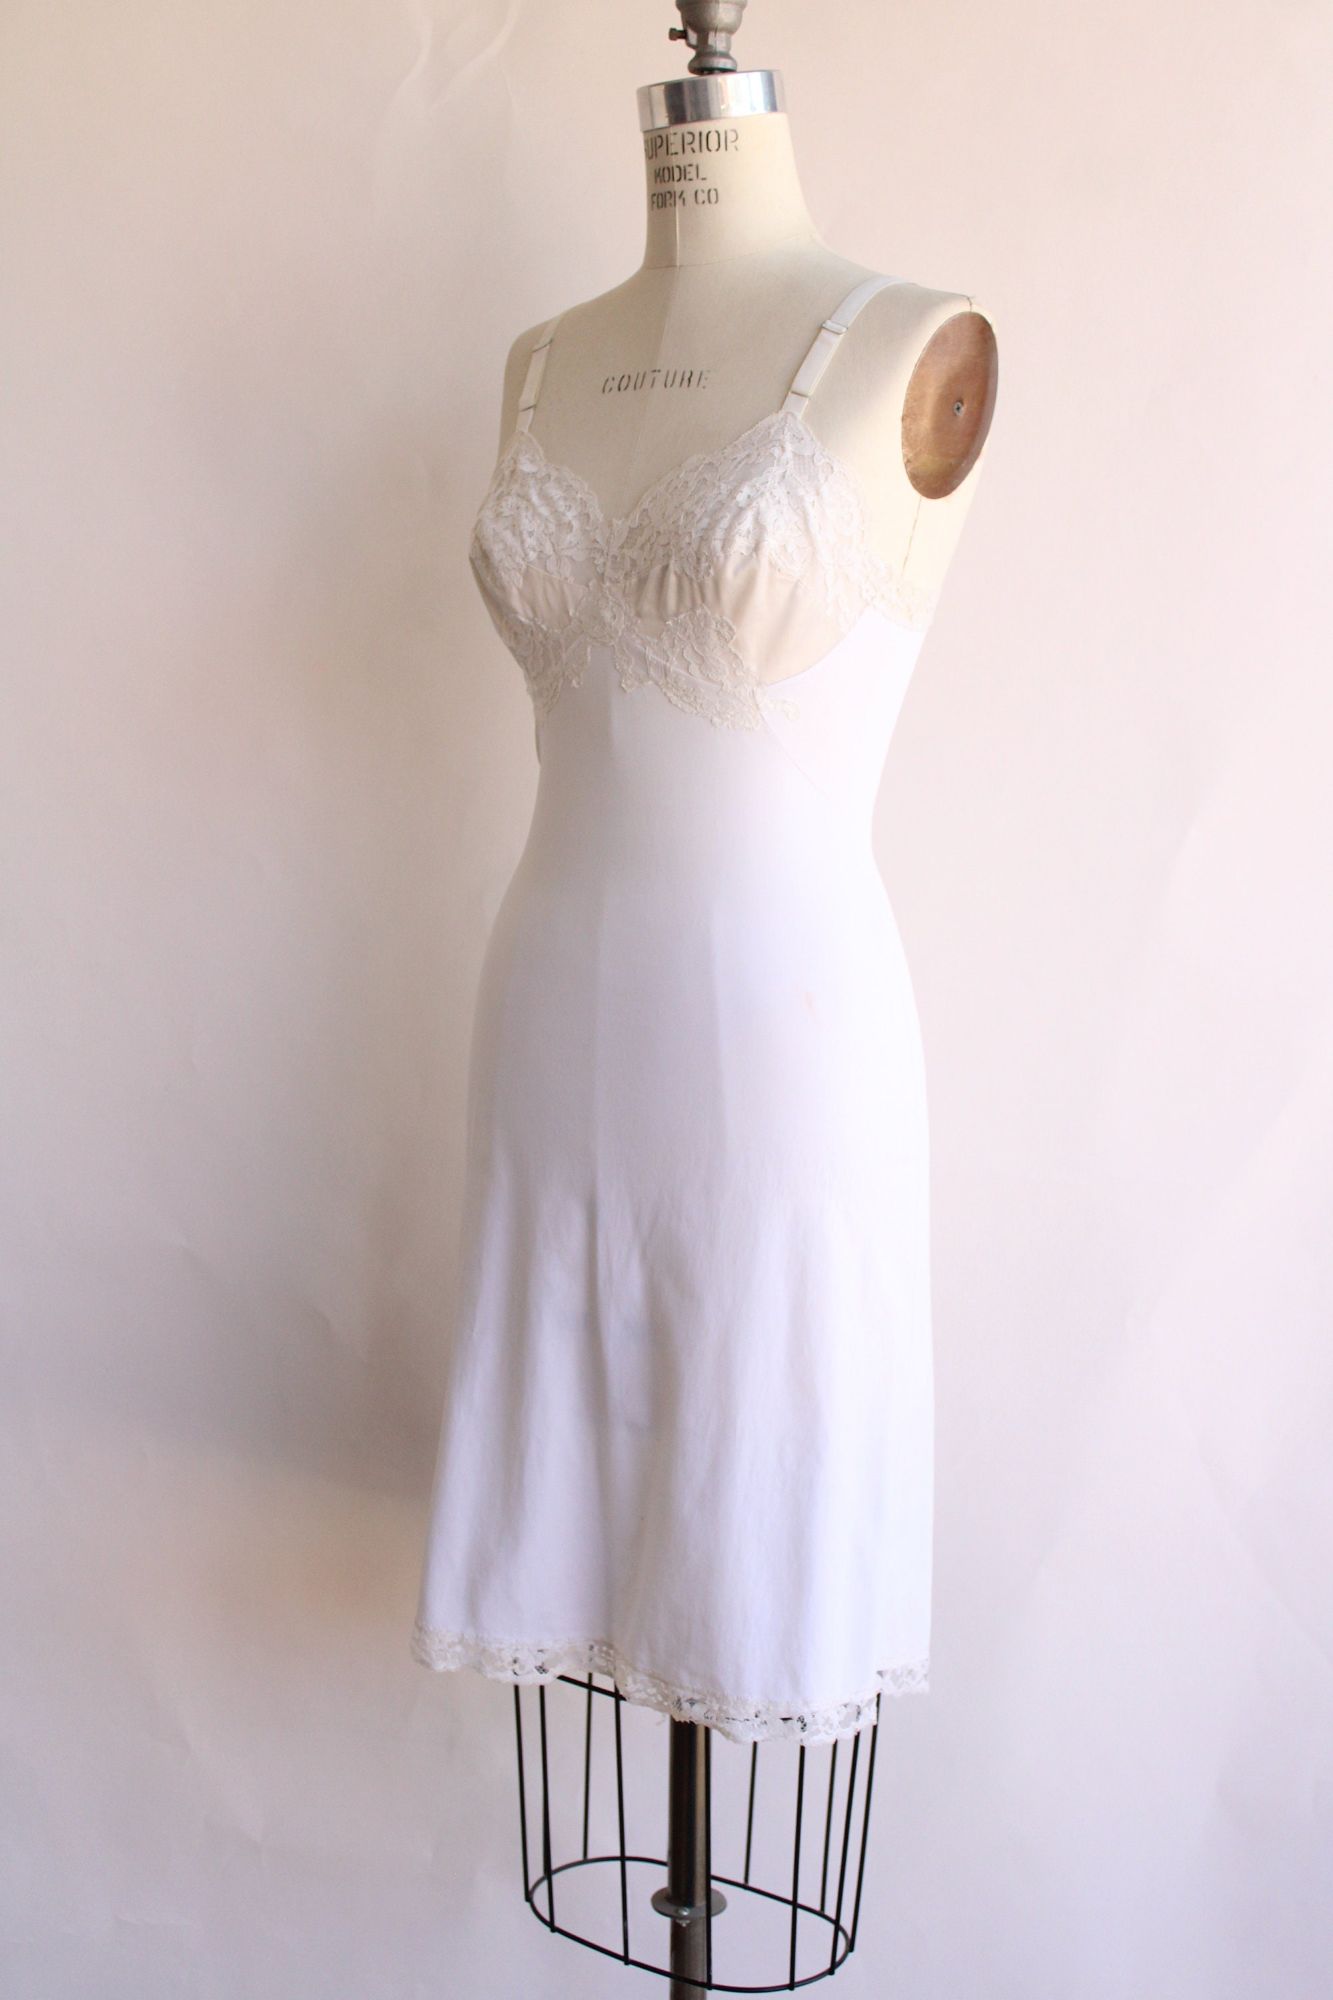 Vintage 1960s Gossard White Nylon Full Slip, Size 32 Short